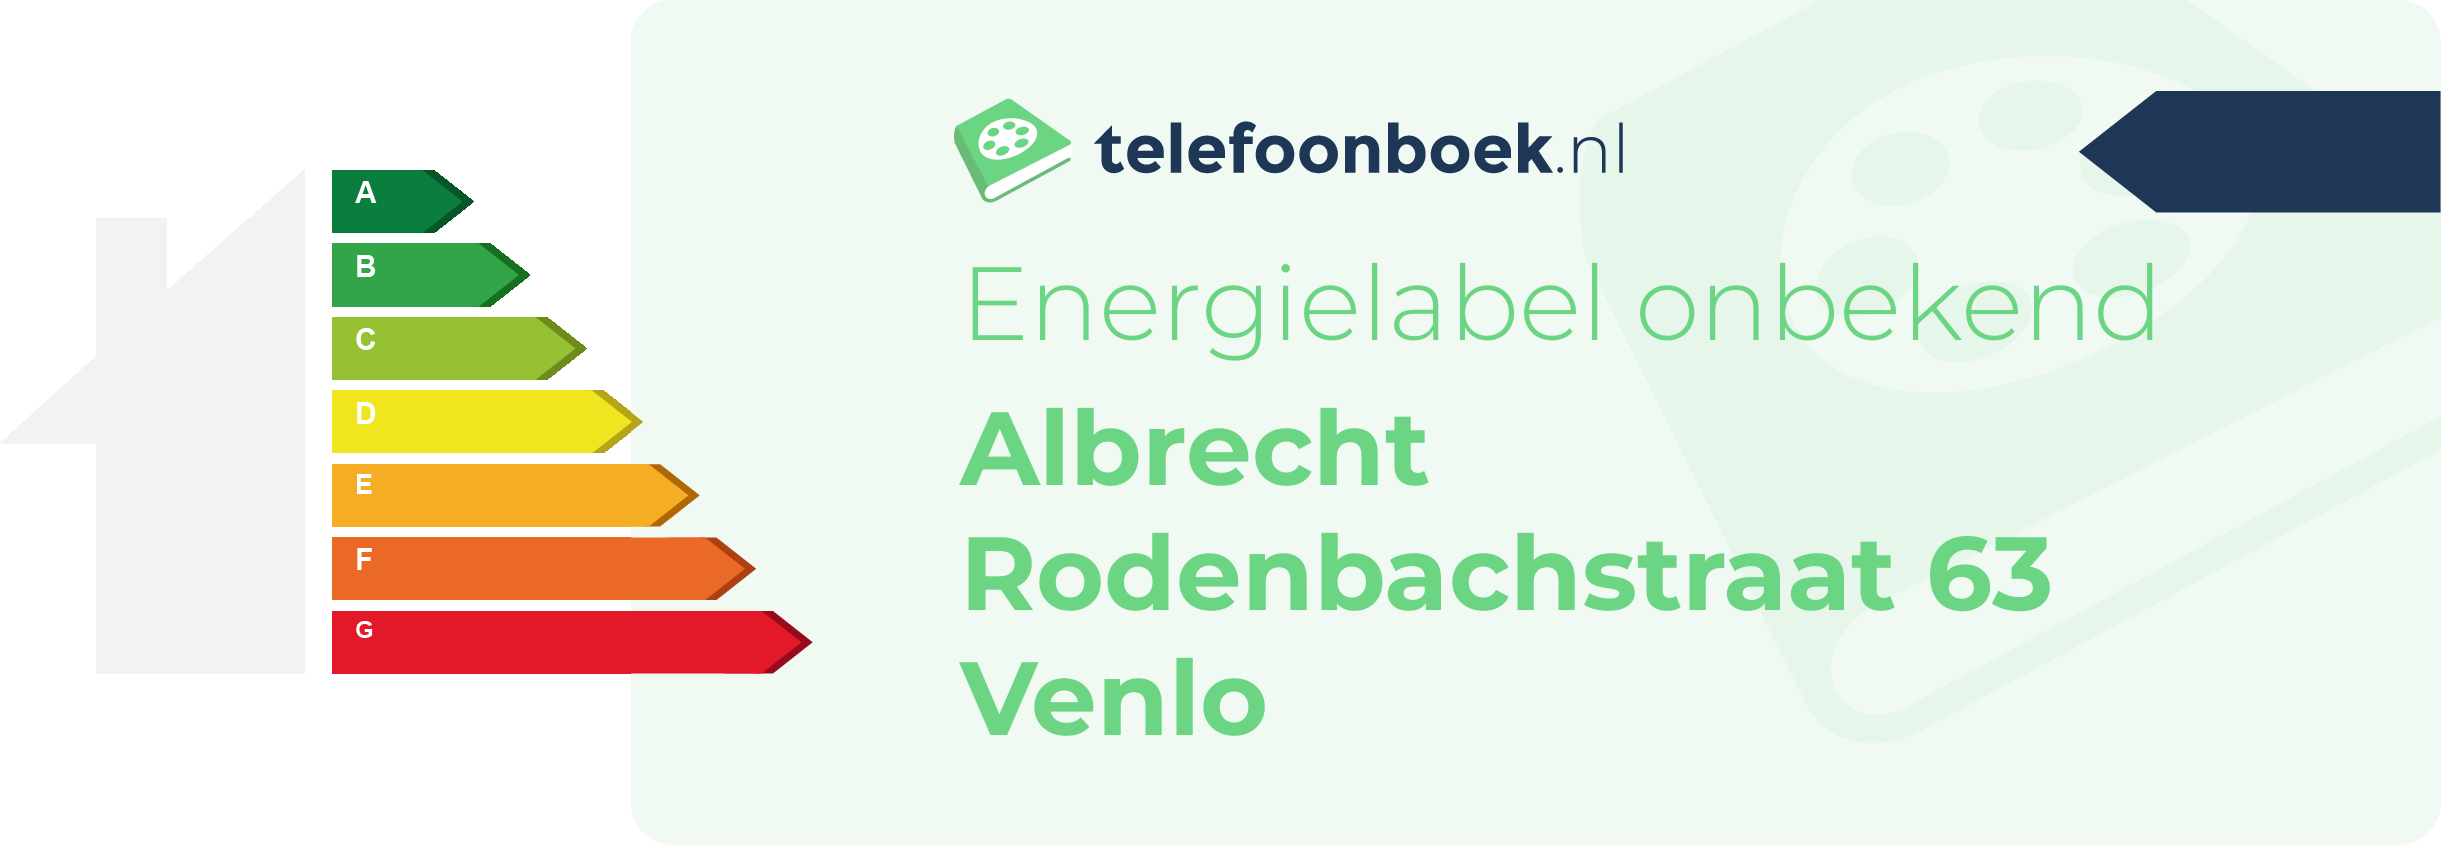 Energielabel Albrecht Rodenbachstraat 63 Venlo